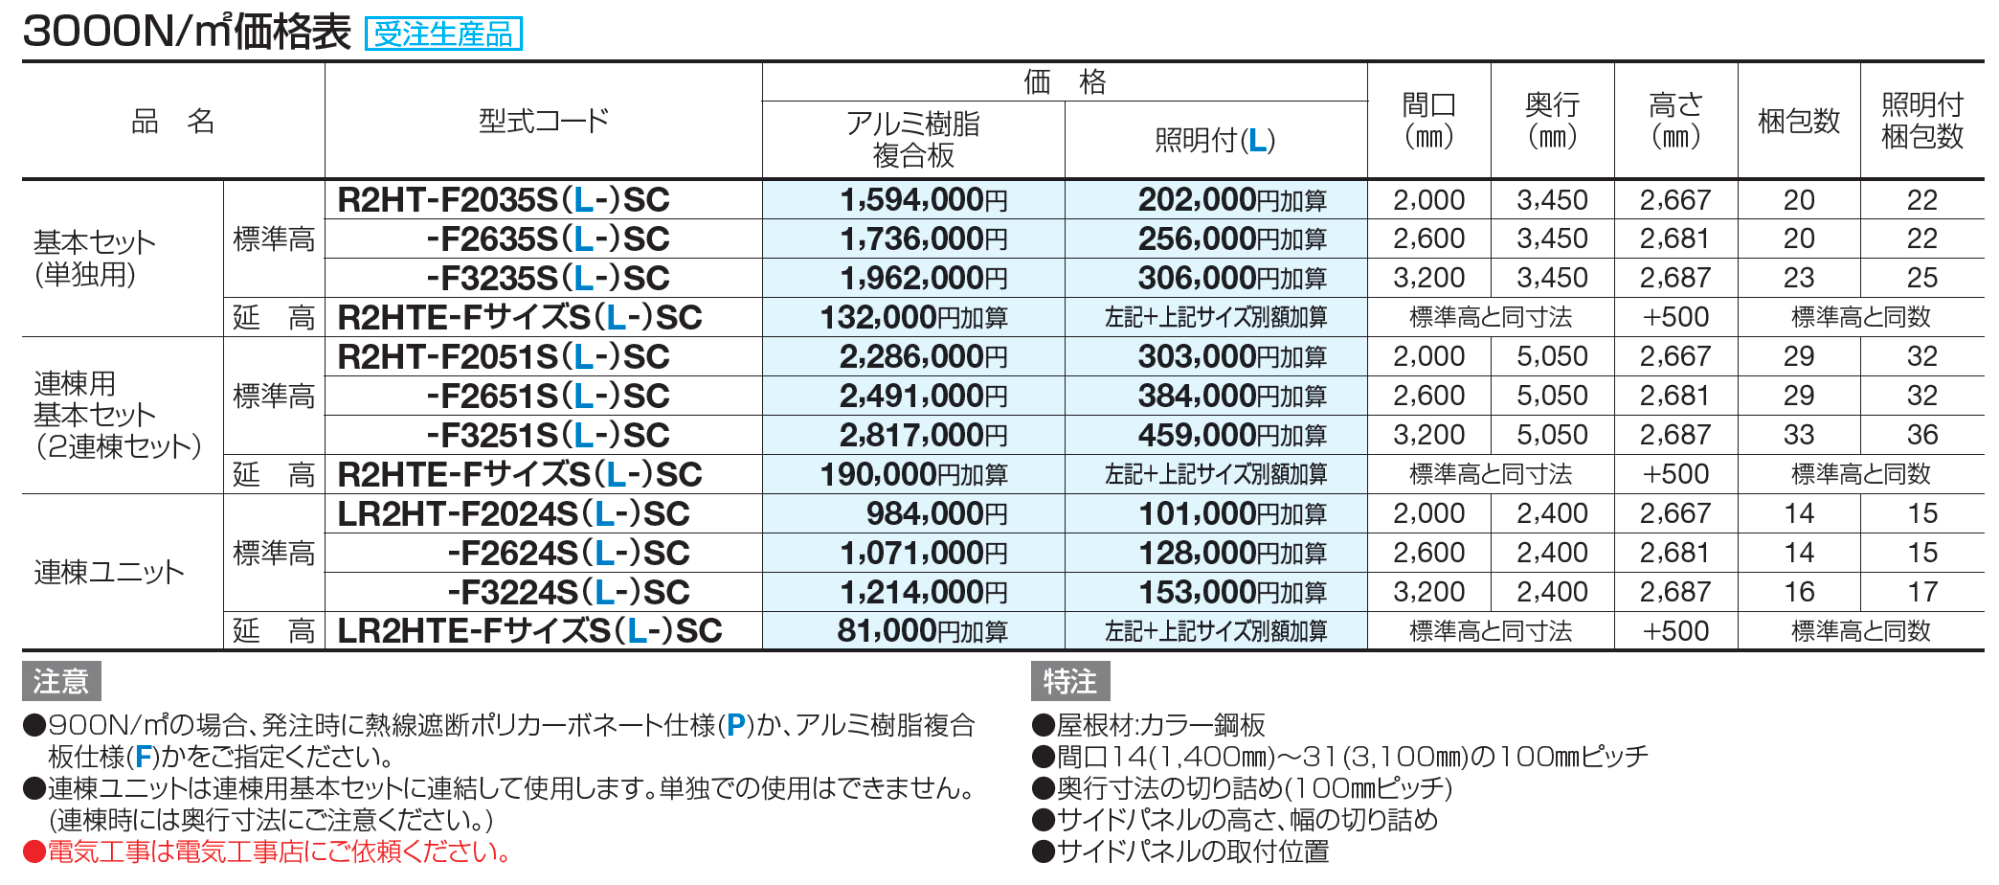 ライズルーフⅡ Hタイプ サイドパネル付(3000N/㎡)【2023年版】_価格_2